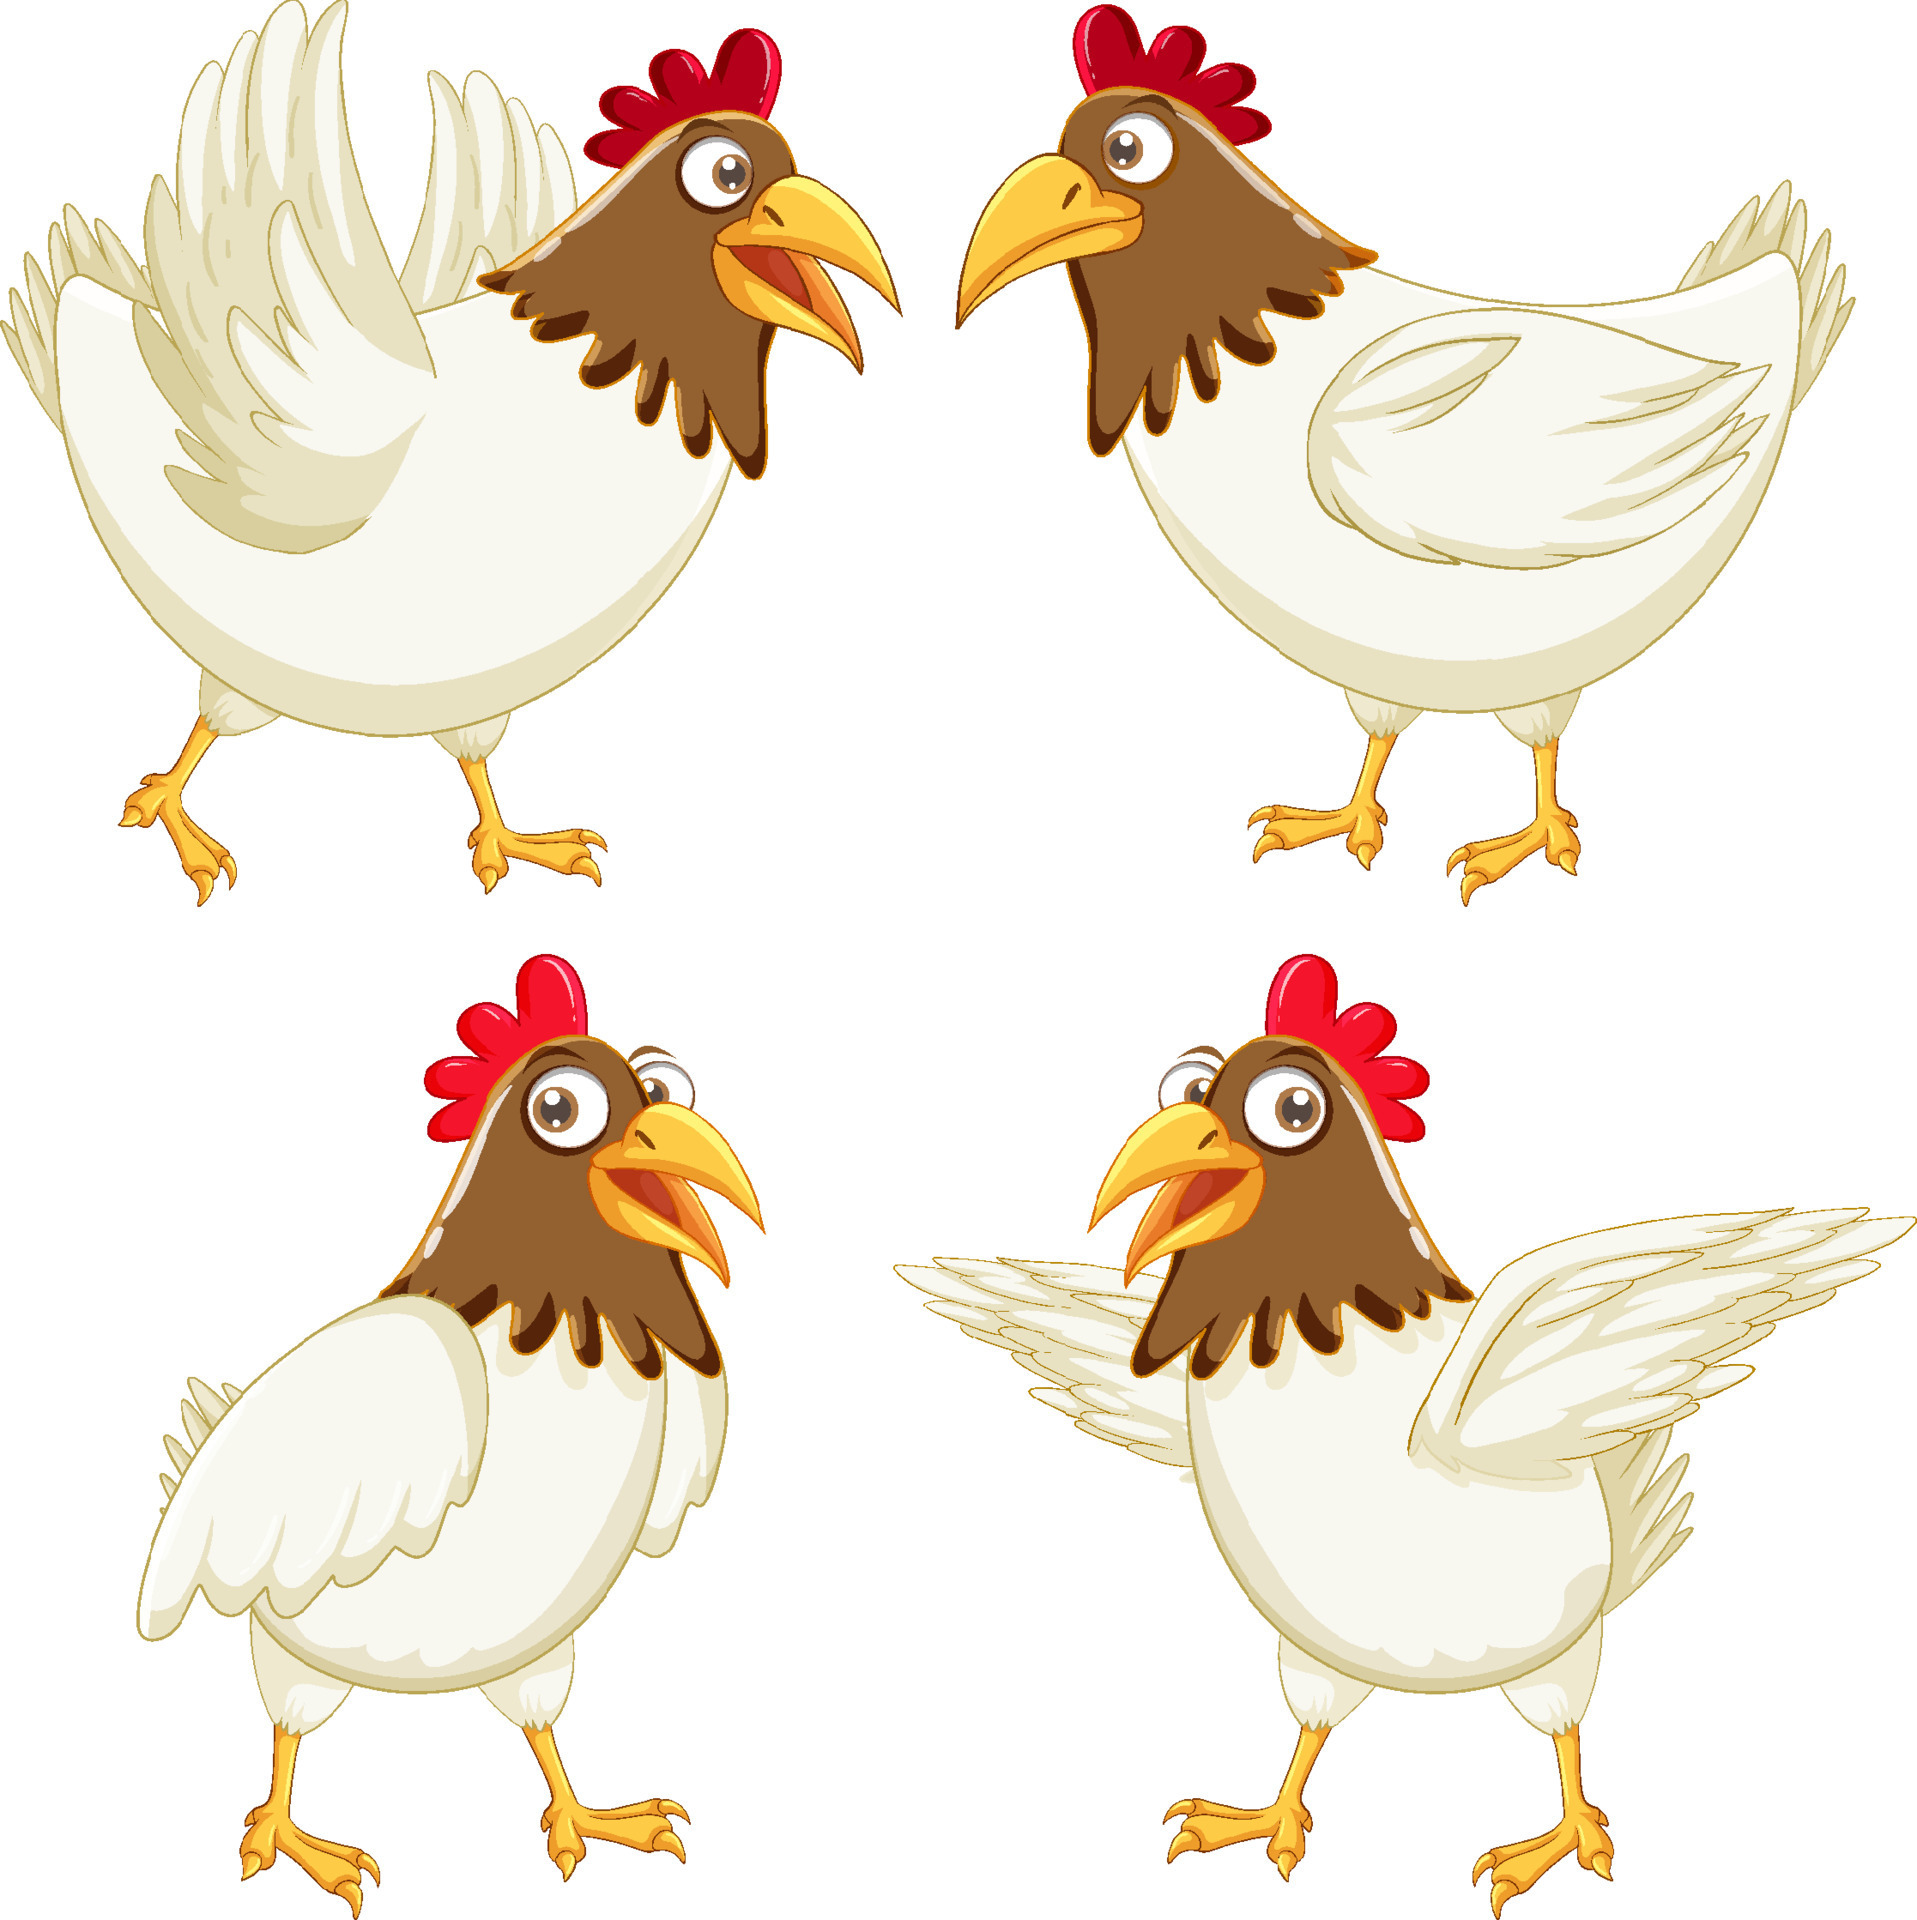 Chicken cartoon characters set 8191332 Vector Art at Vecteezy